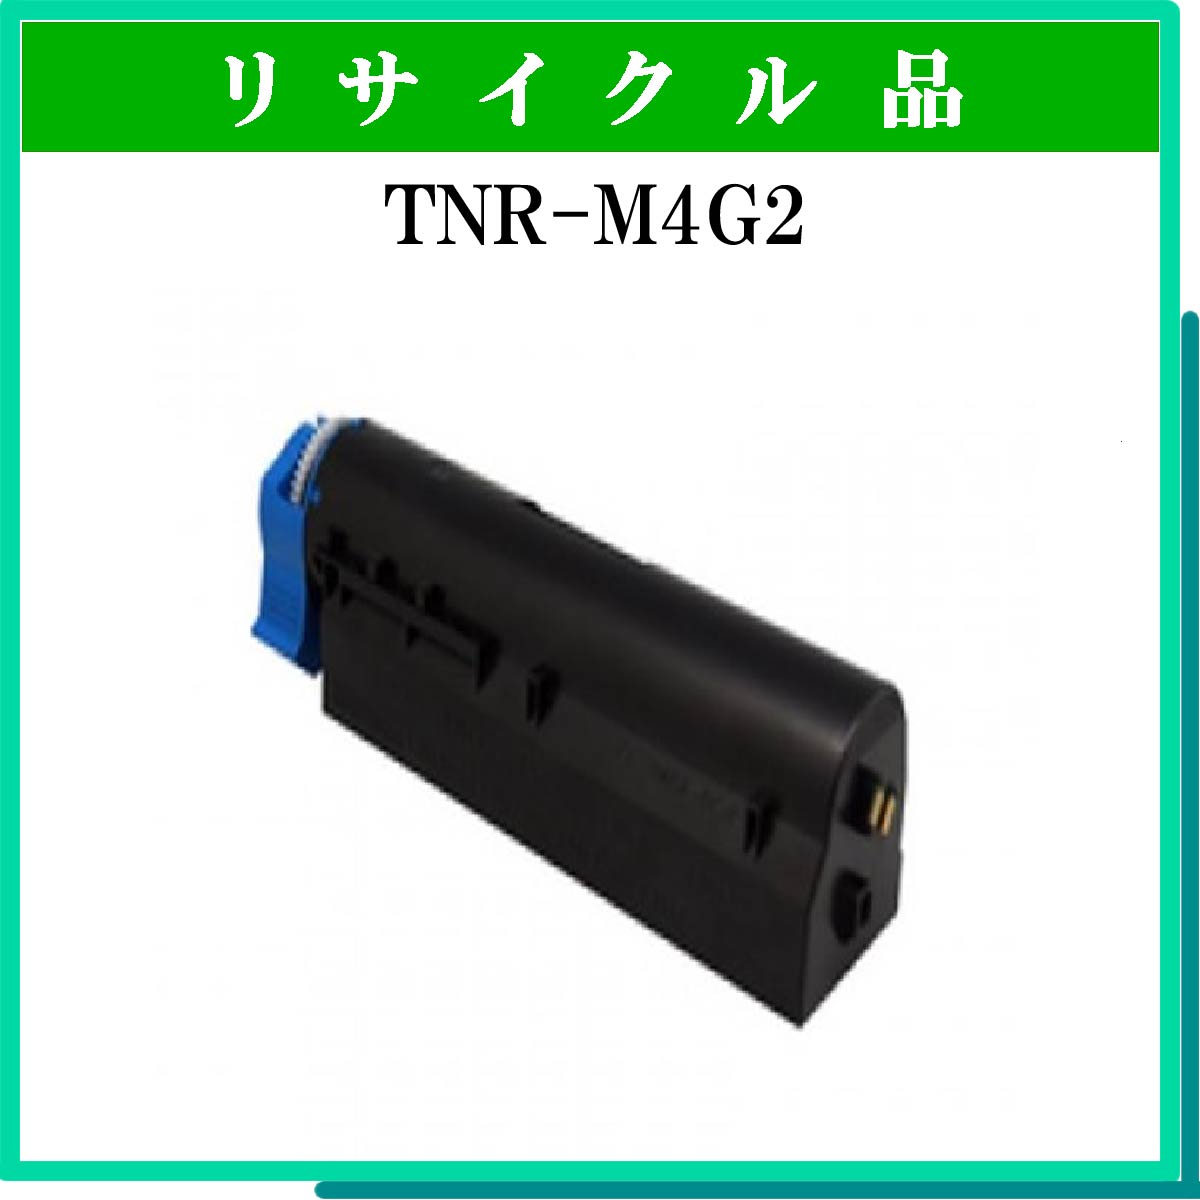 TNR-M4G2